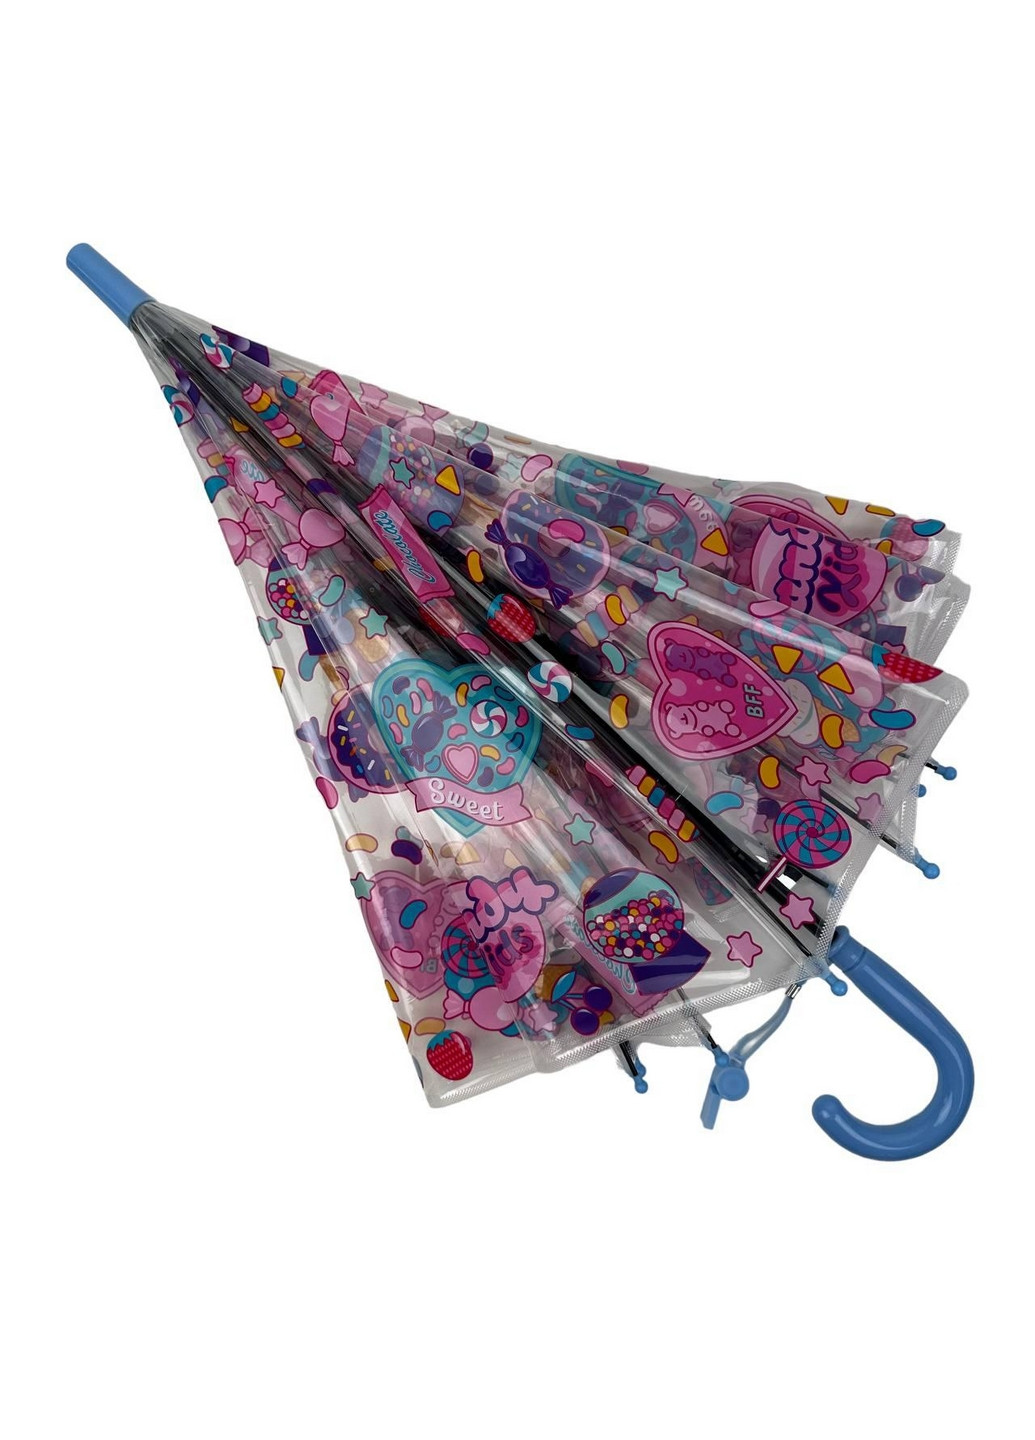 Детский прозрачный зонт трость полуавтомат Fiaba (276392687)